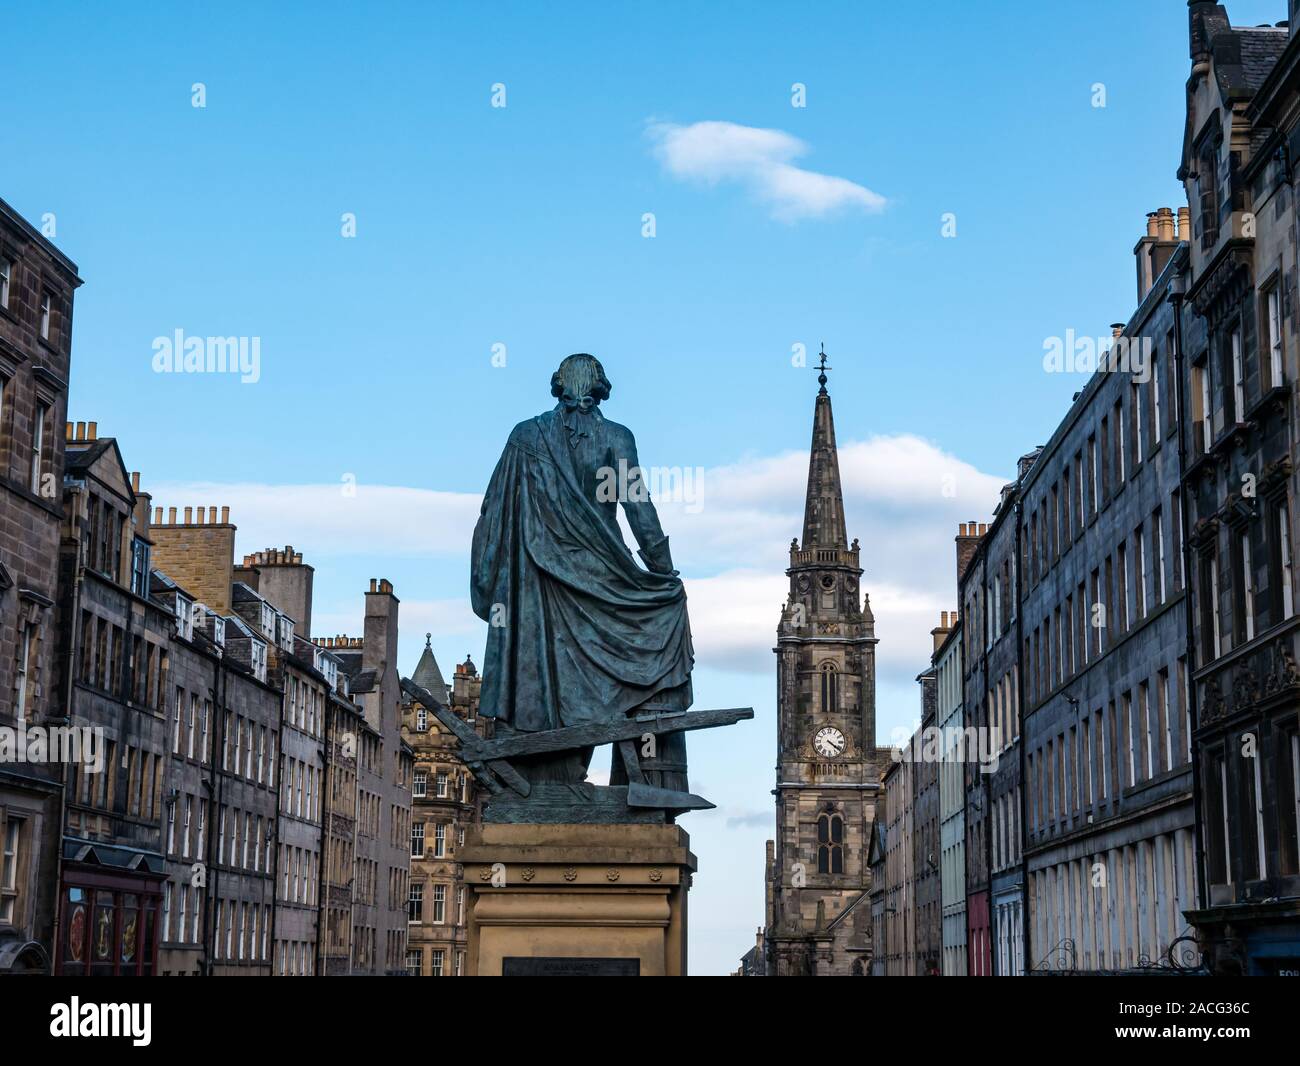 Statue d'Adam Smith et de vieux bâtiments historiques le long de la Royal Mile sur jour ensoleillé, ciel bleu, Édimbourg, Écosse, Royaume-Uni Banque D'Images